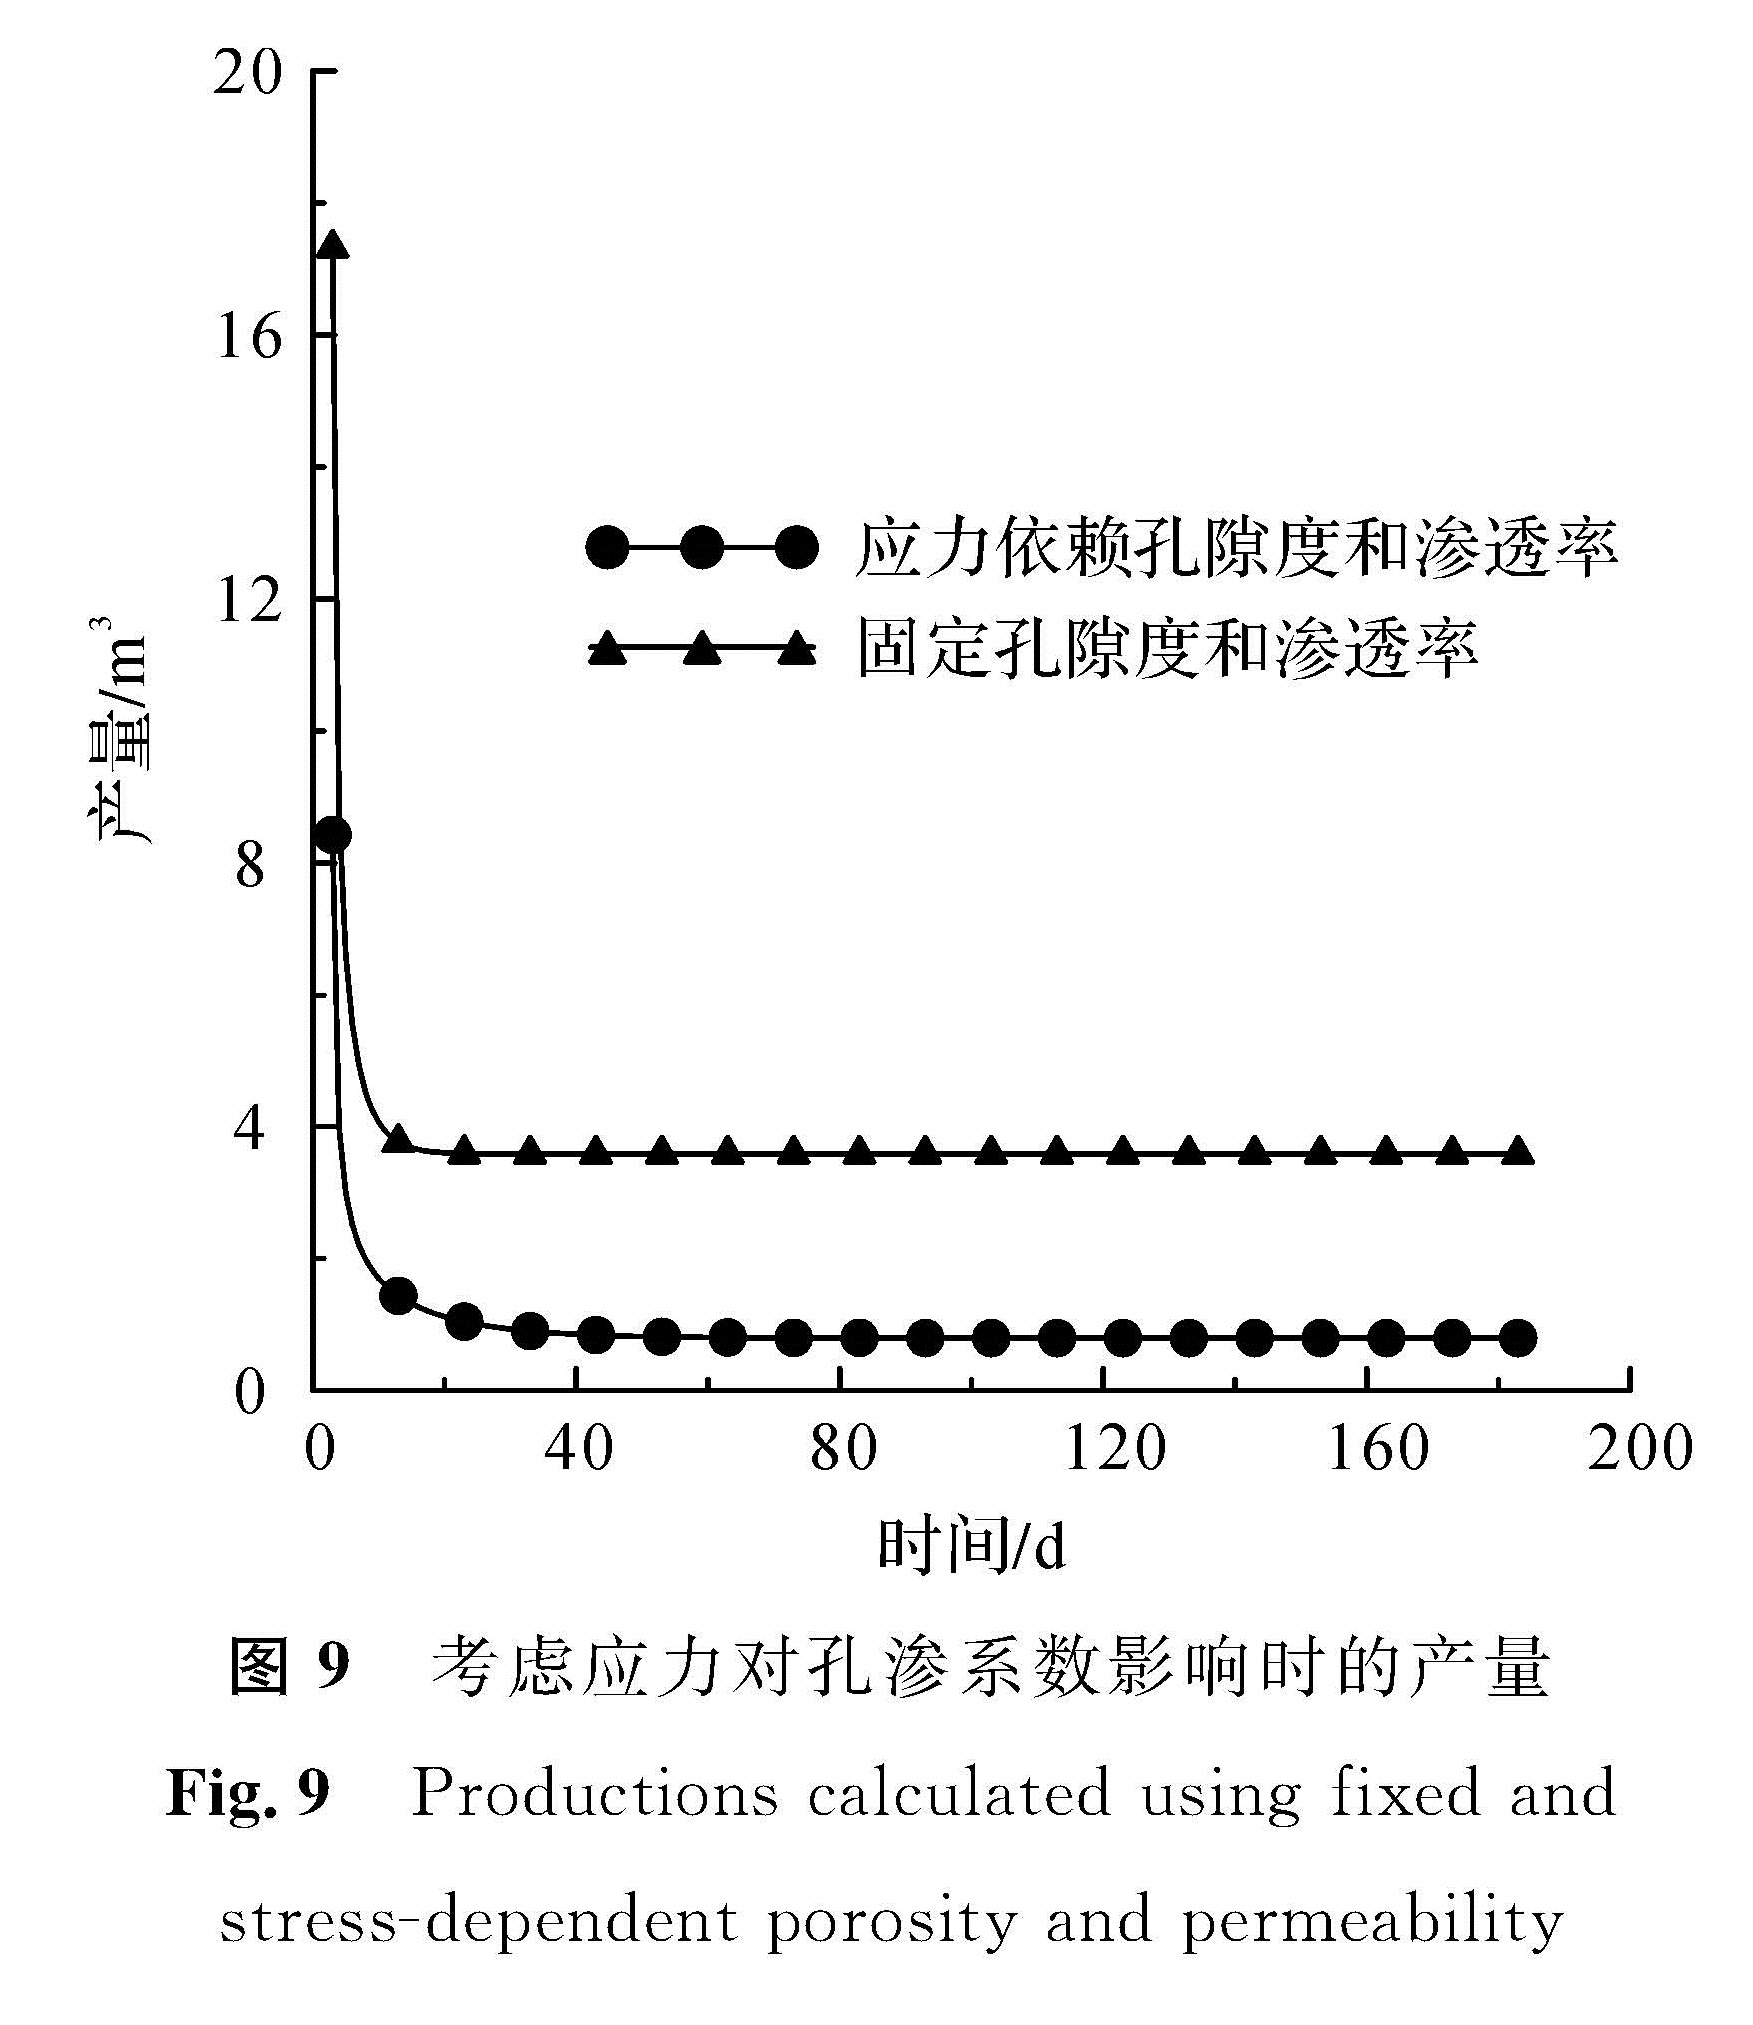 图9 考虑应力对孔渗系数影响时的产量<br/>Fig.9 Productions calculated using fixed and stress-dependent porosity and permeability